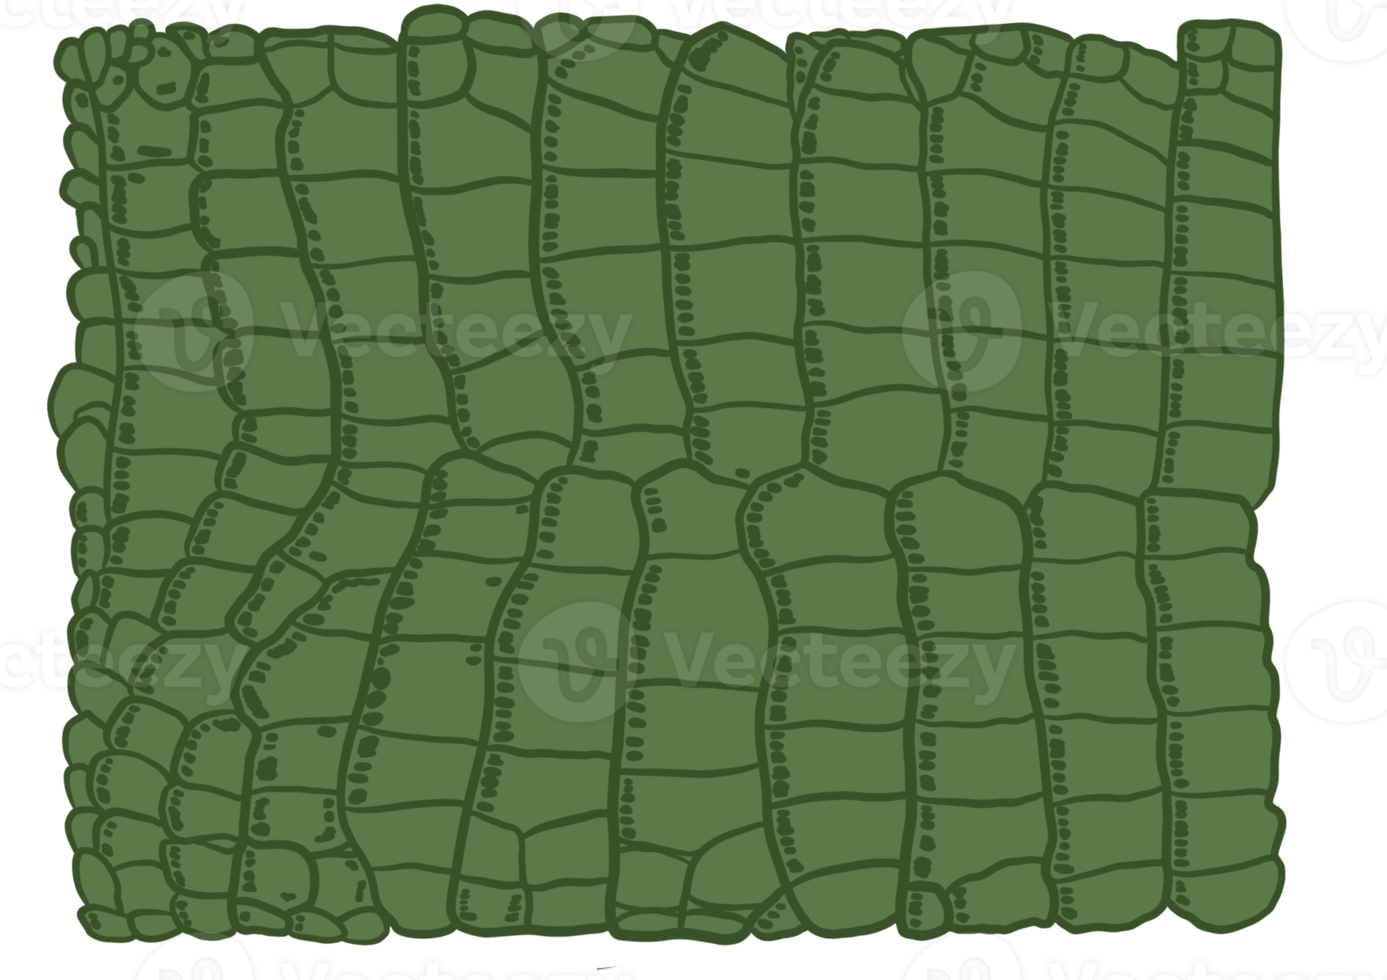 patrón de cocodrilo verde png